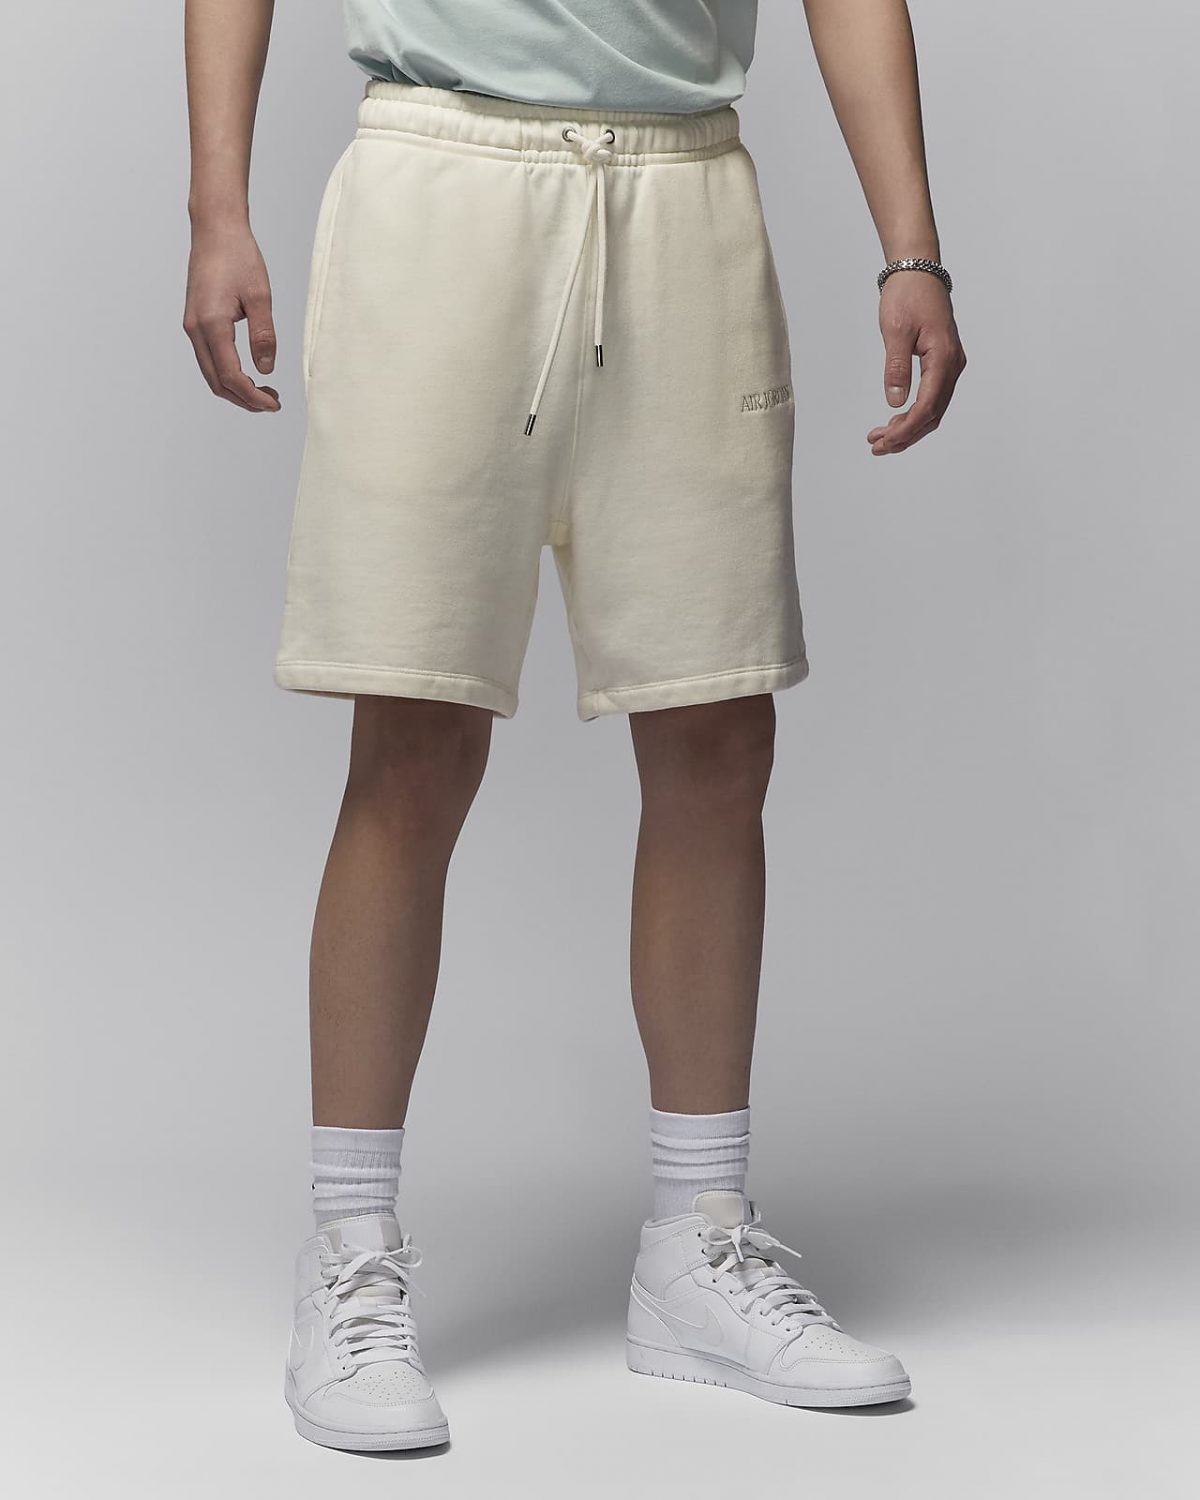 Мужские шорты nike Air Jordan Wordmark белые фото